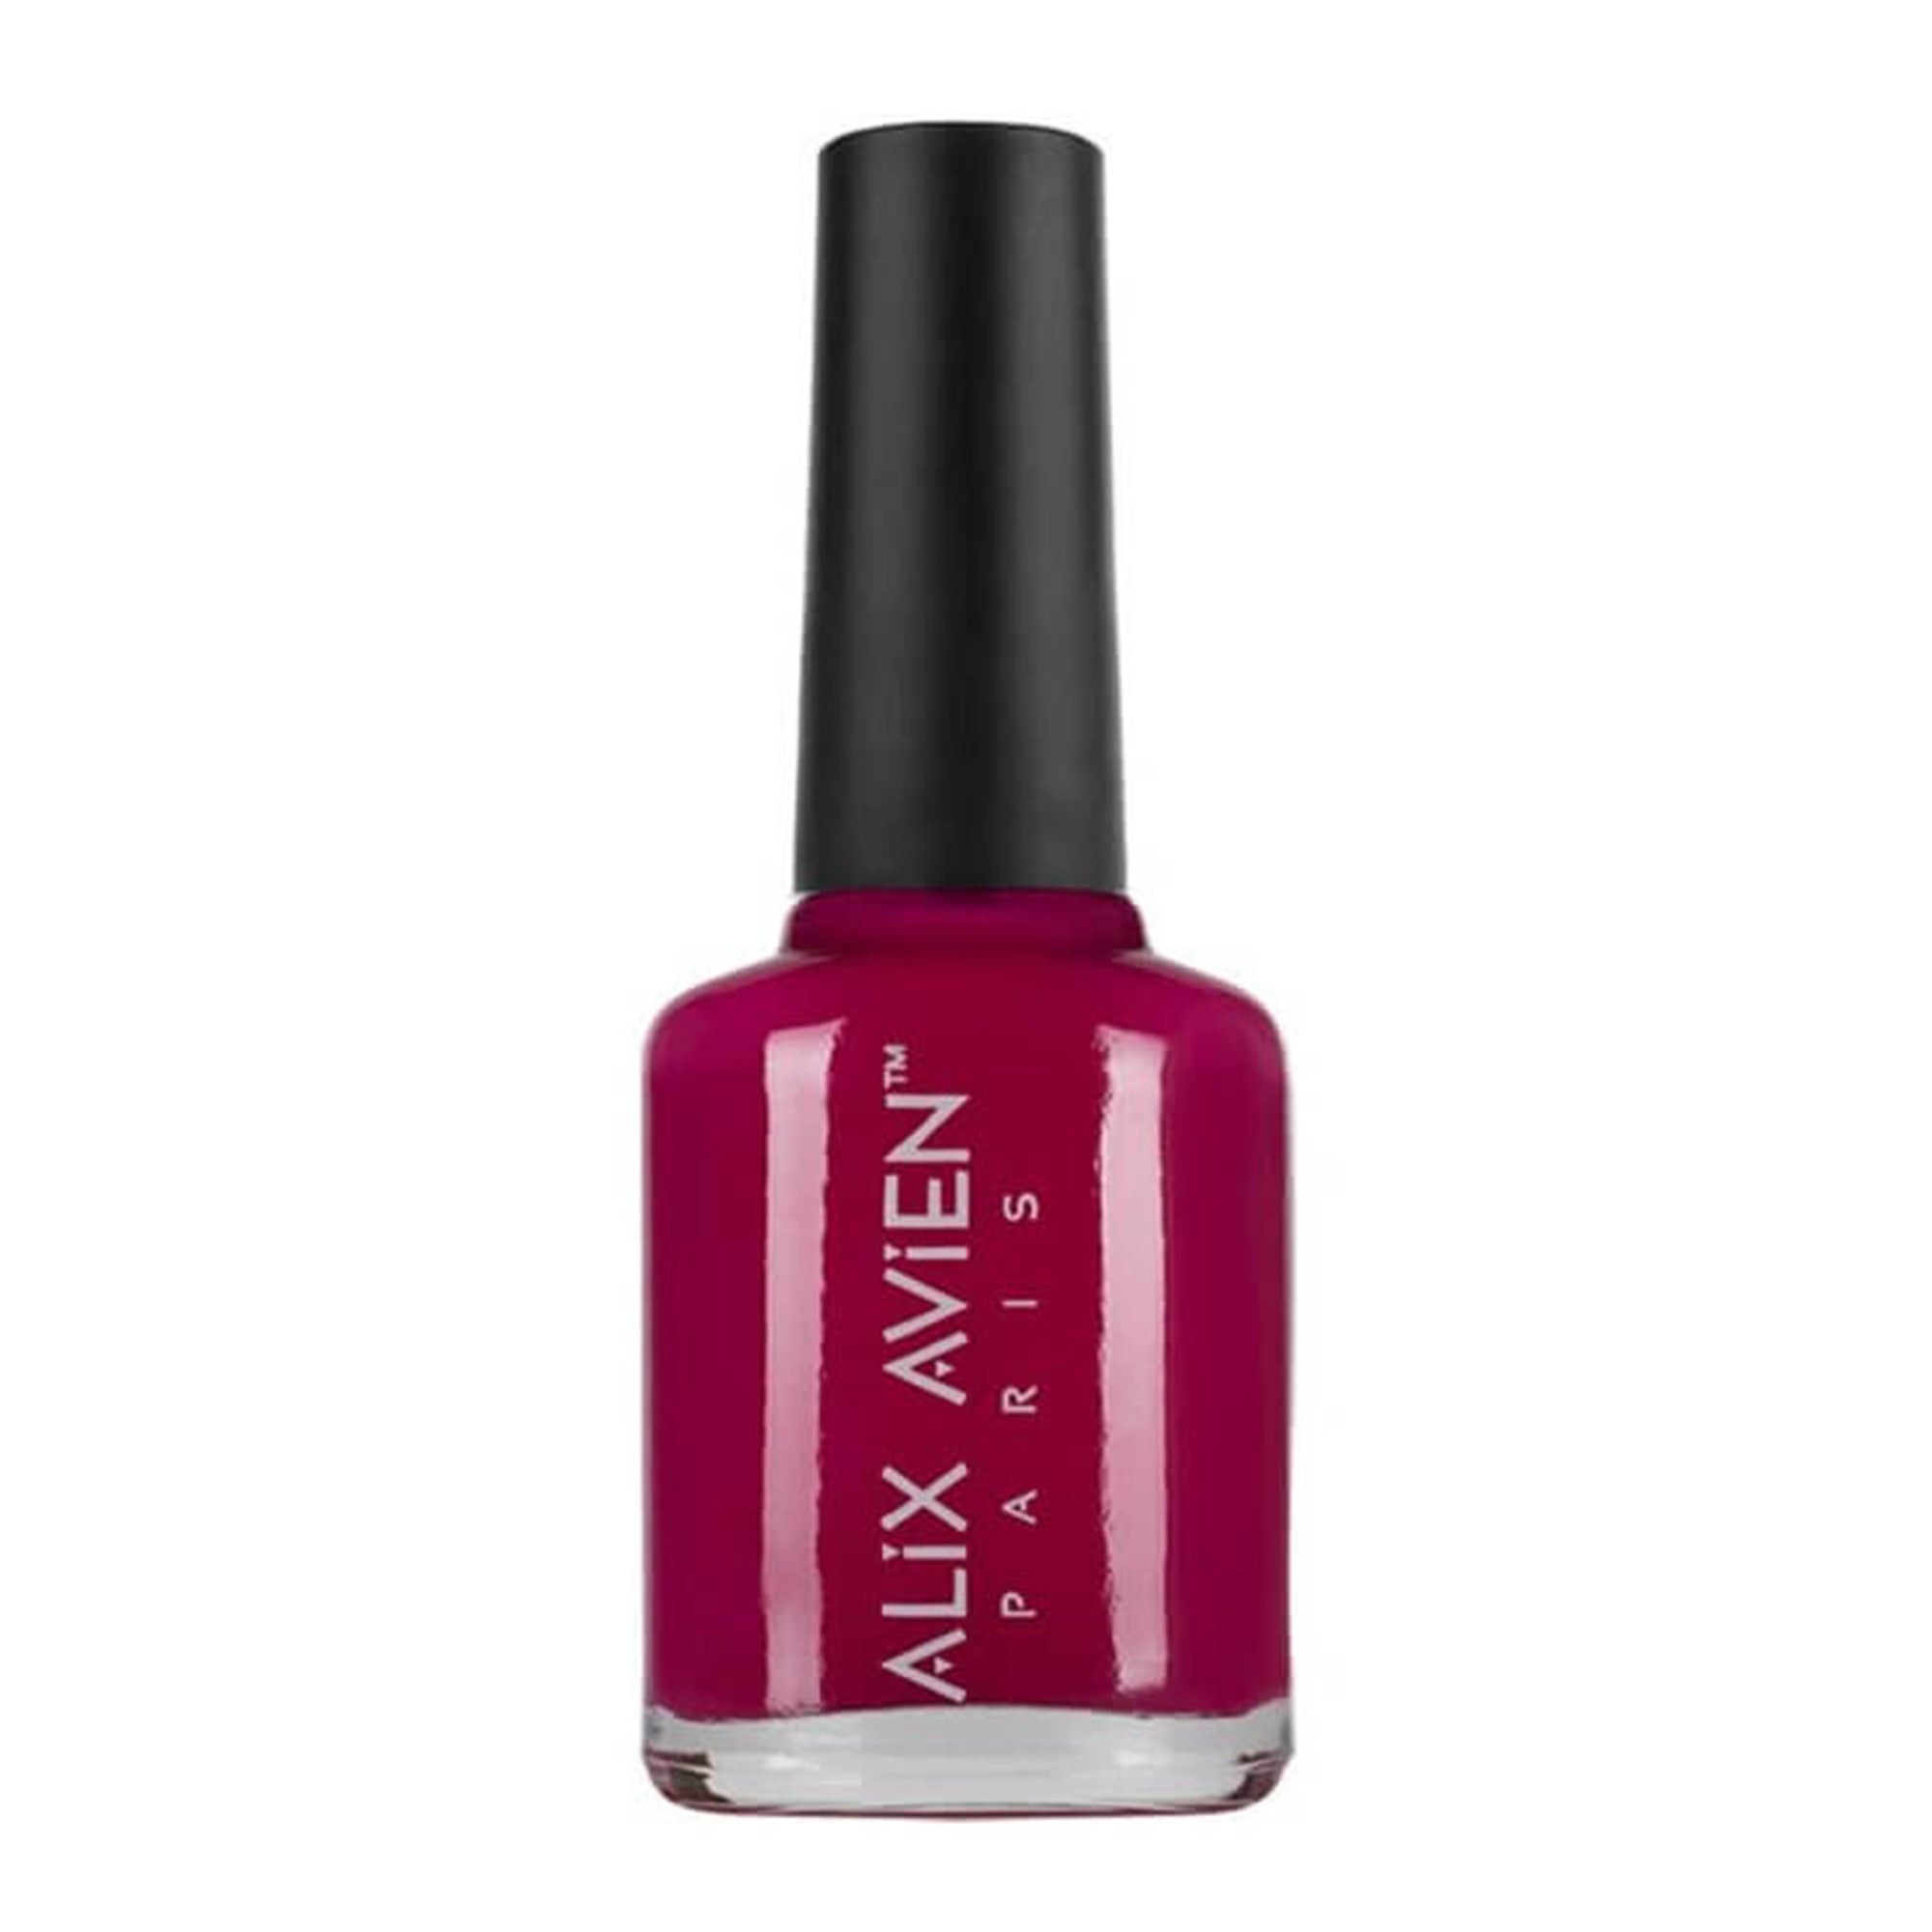 Alix Avien - Nail Polish No.18 (Hot Pink)